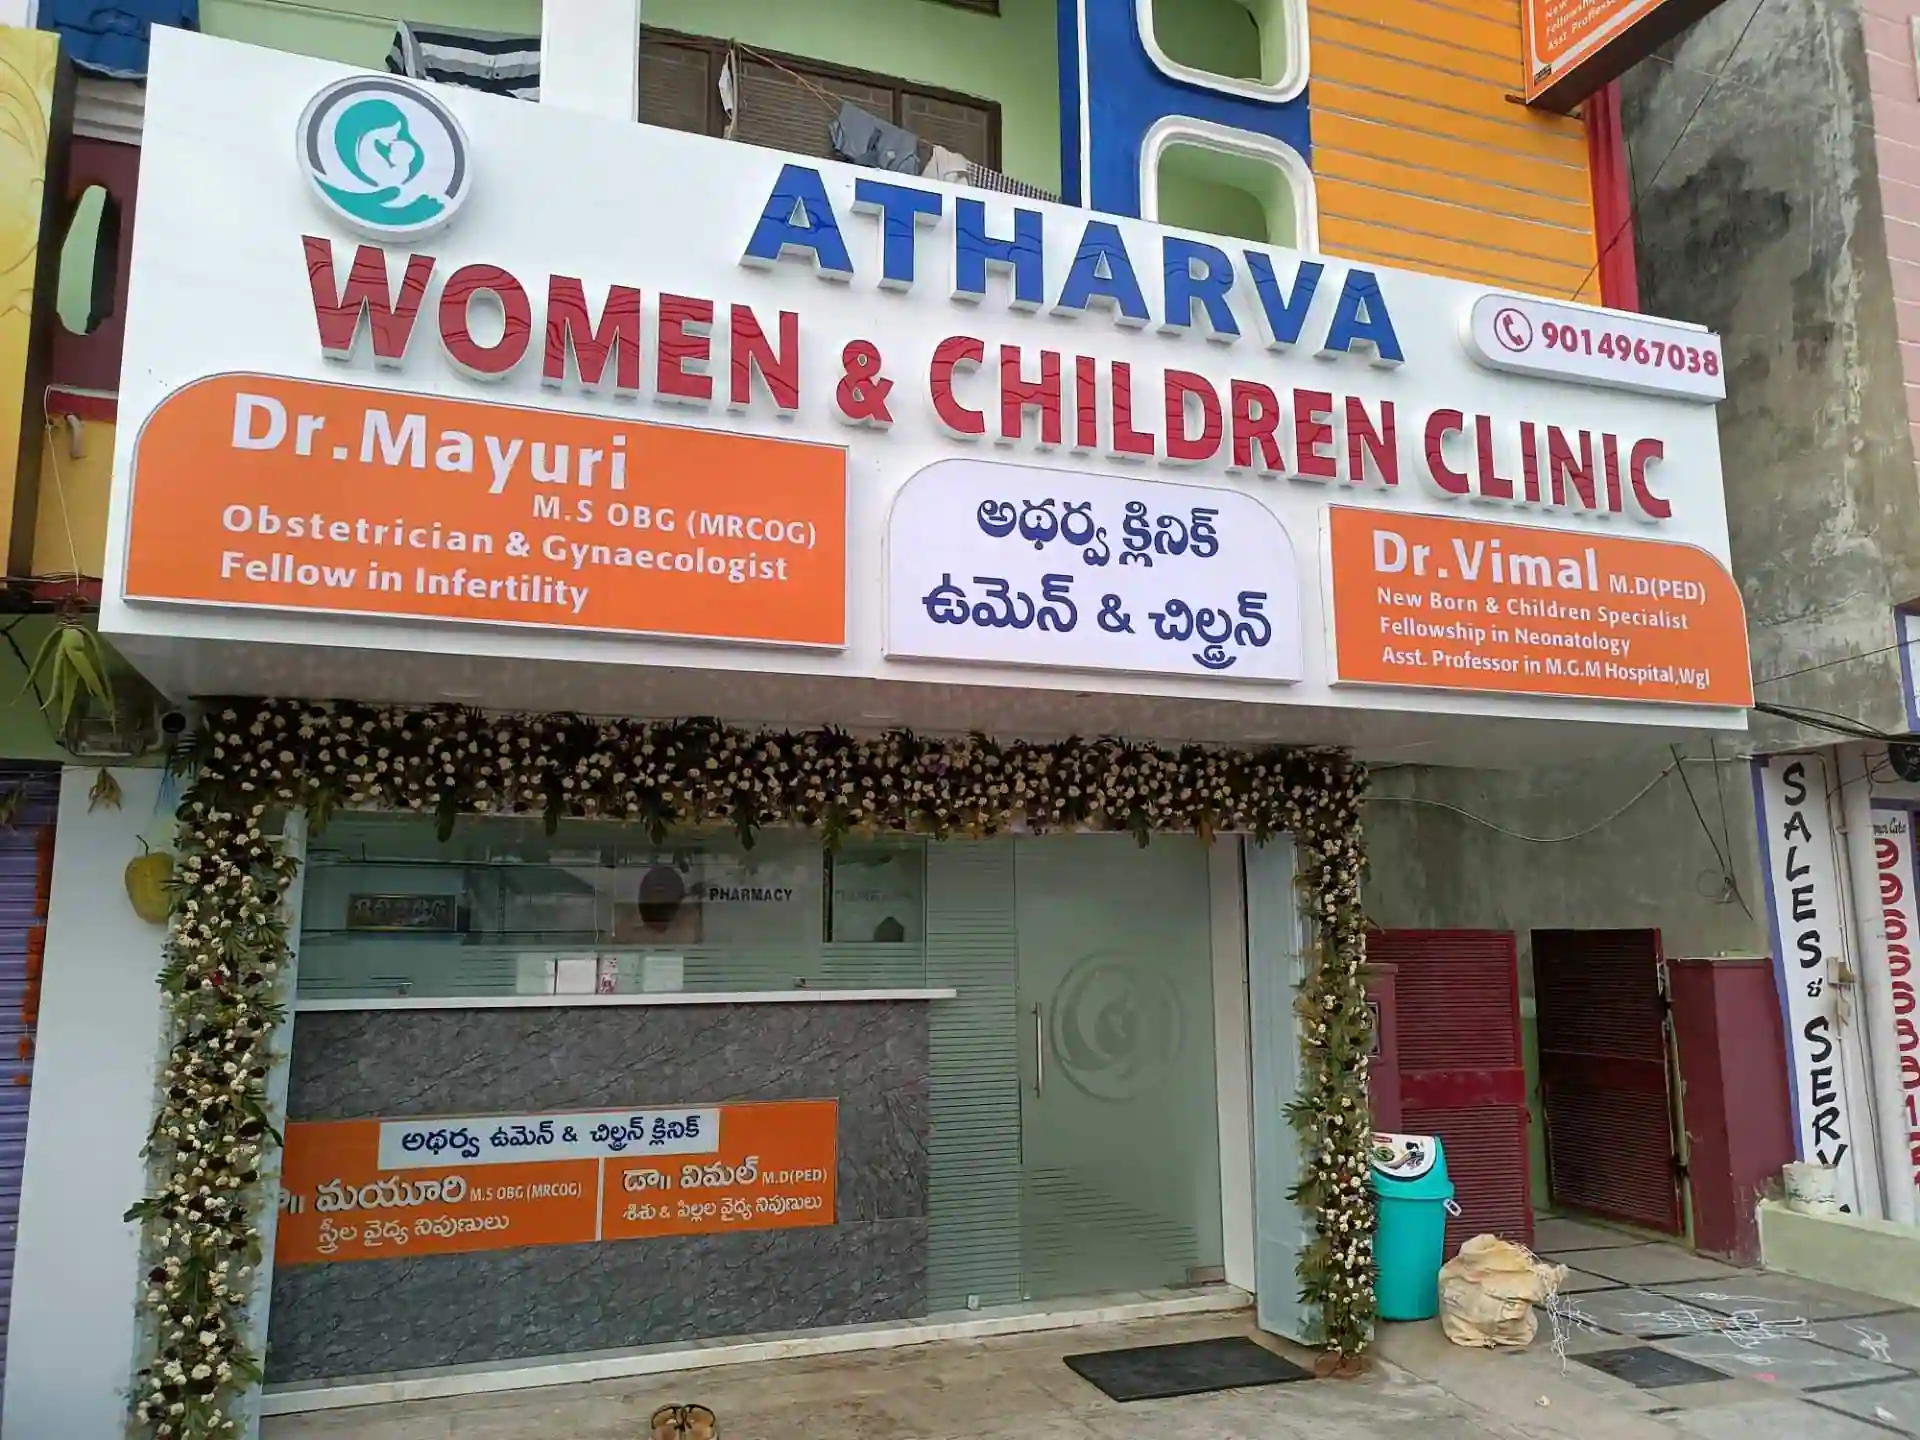 Atharva Women and Children Clinic - Waddepally, Warangal